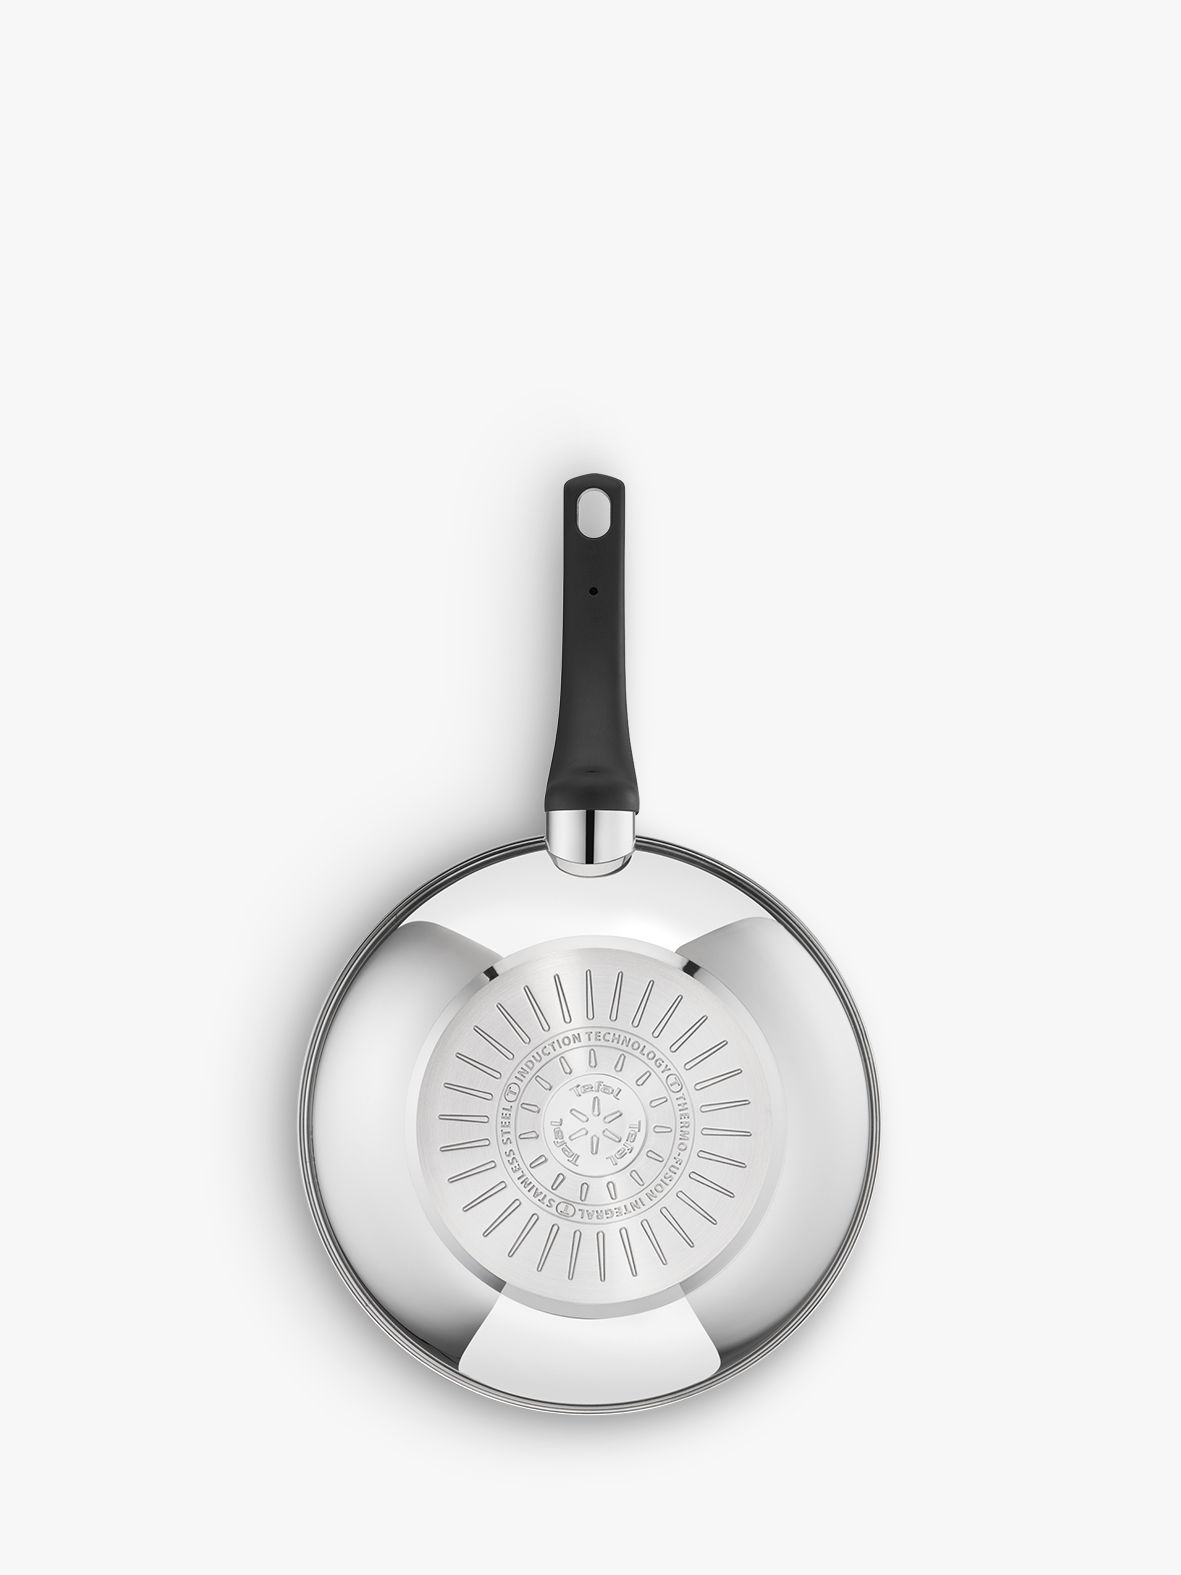 TEFAL Poêle wok induction 28 cm EMOTION pas cher 